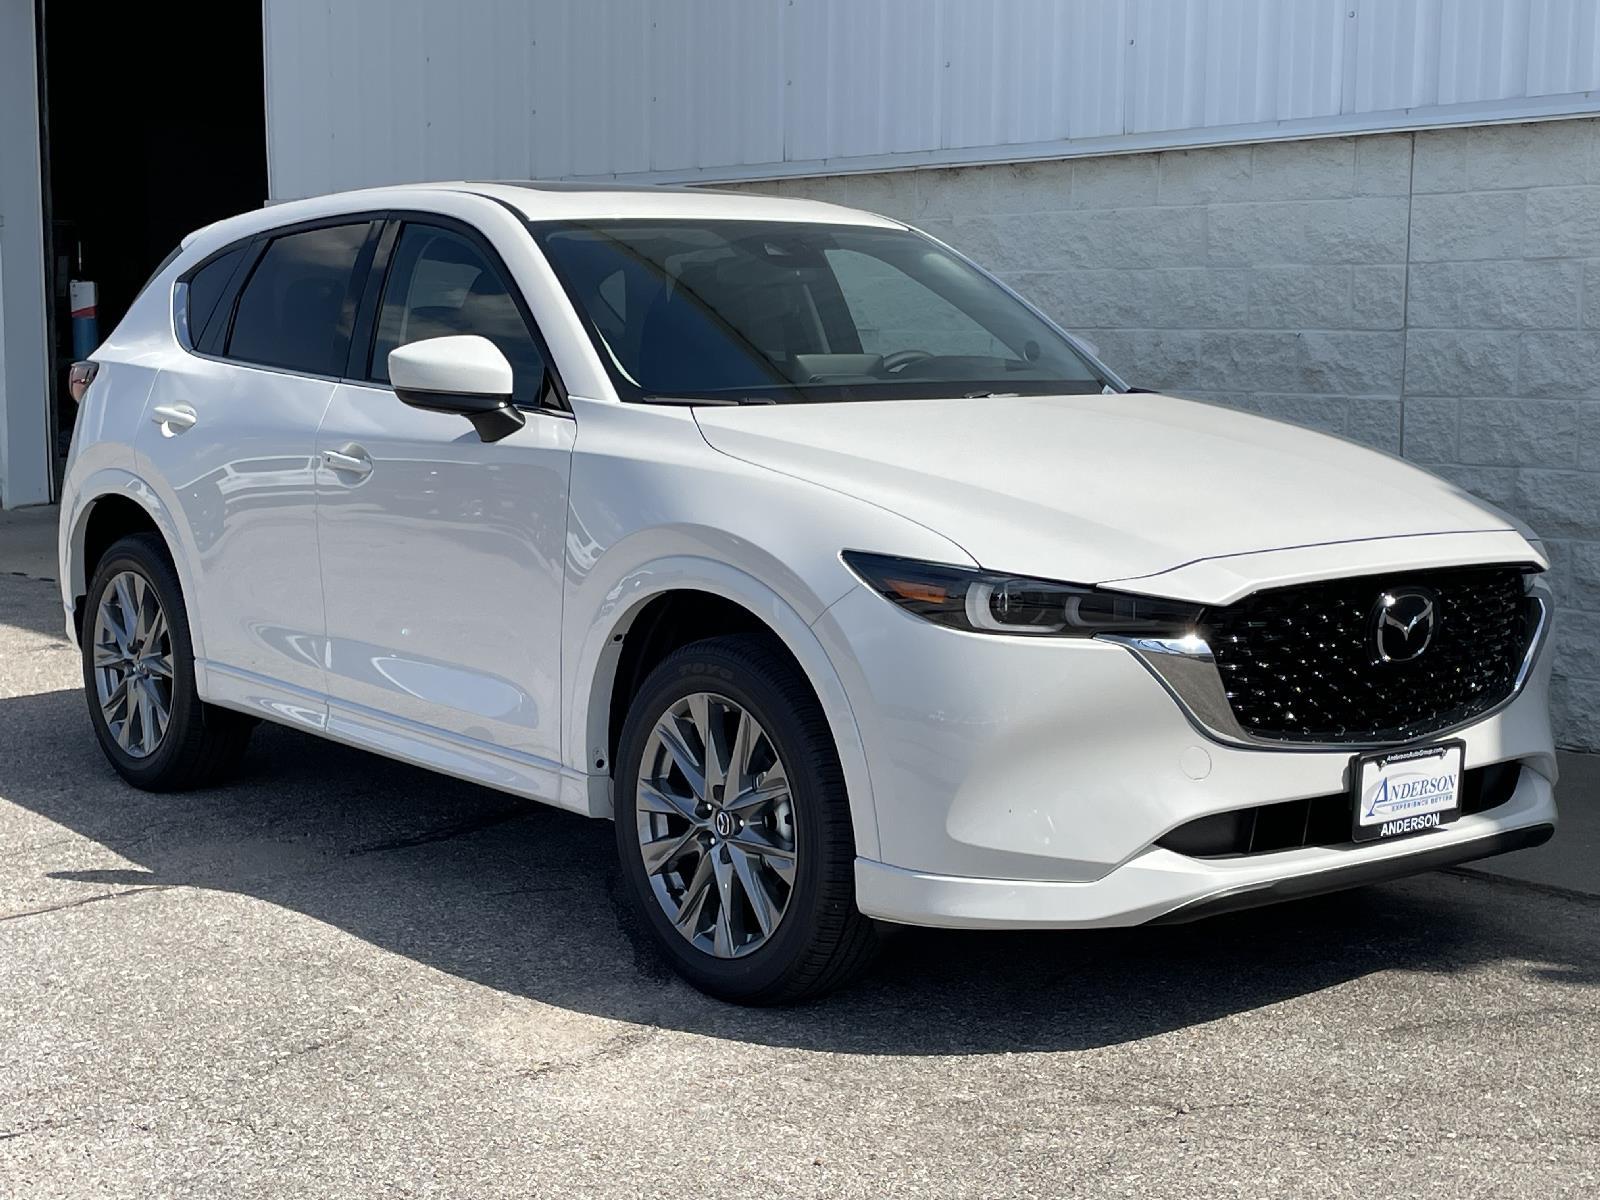 New 2024 Mazda CX-5 2.5 S Premium Plus Package SUV for sale in Lincoln NE